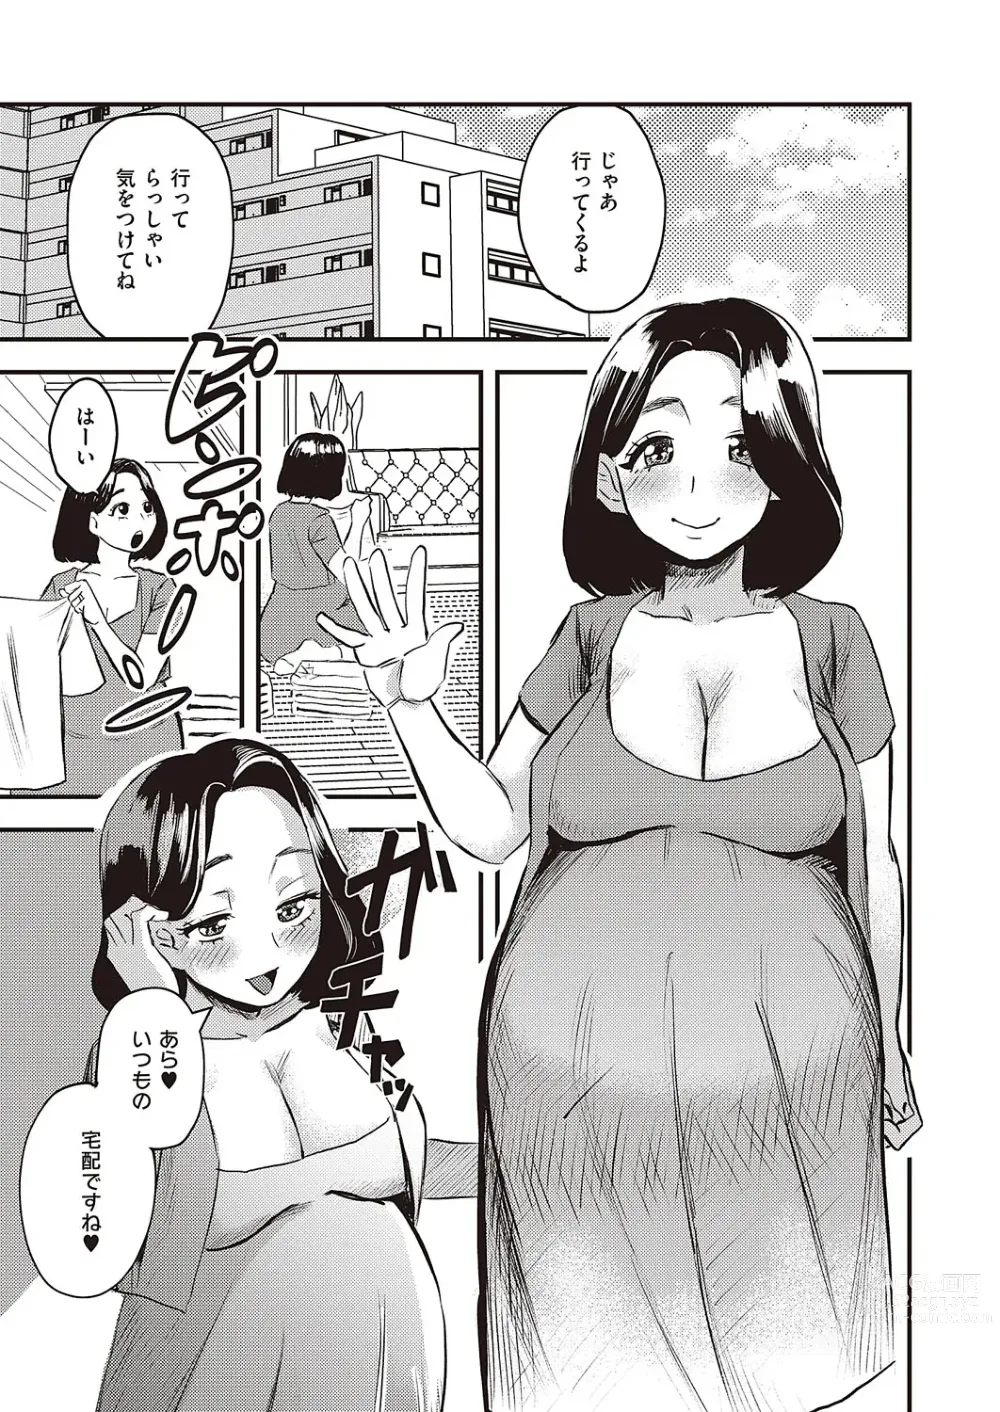 Page 1030 of manga COMIC ExE 45